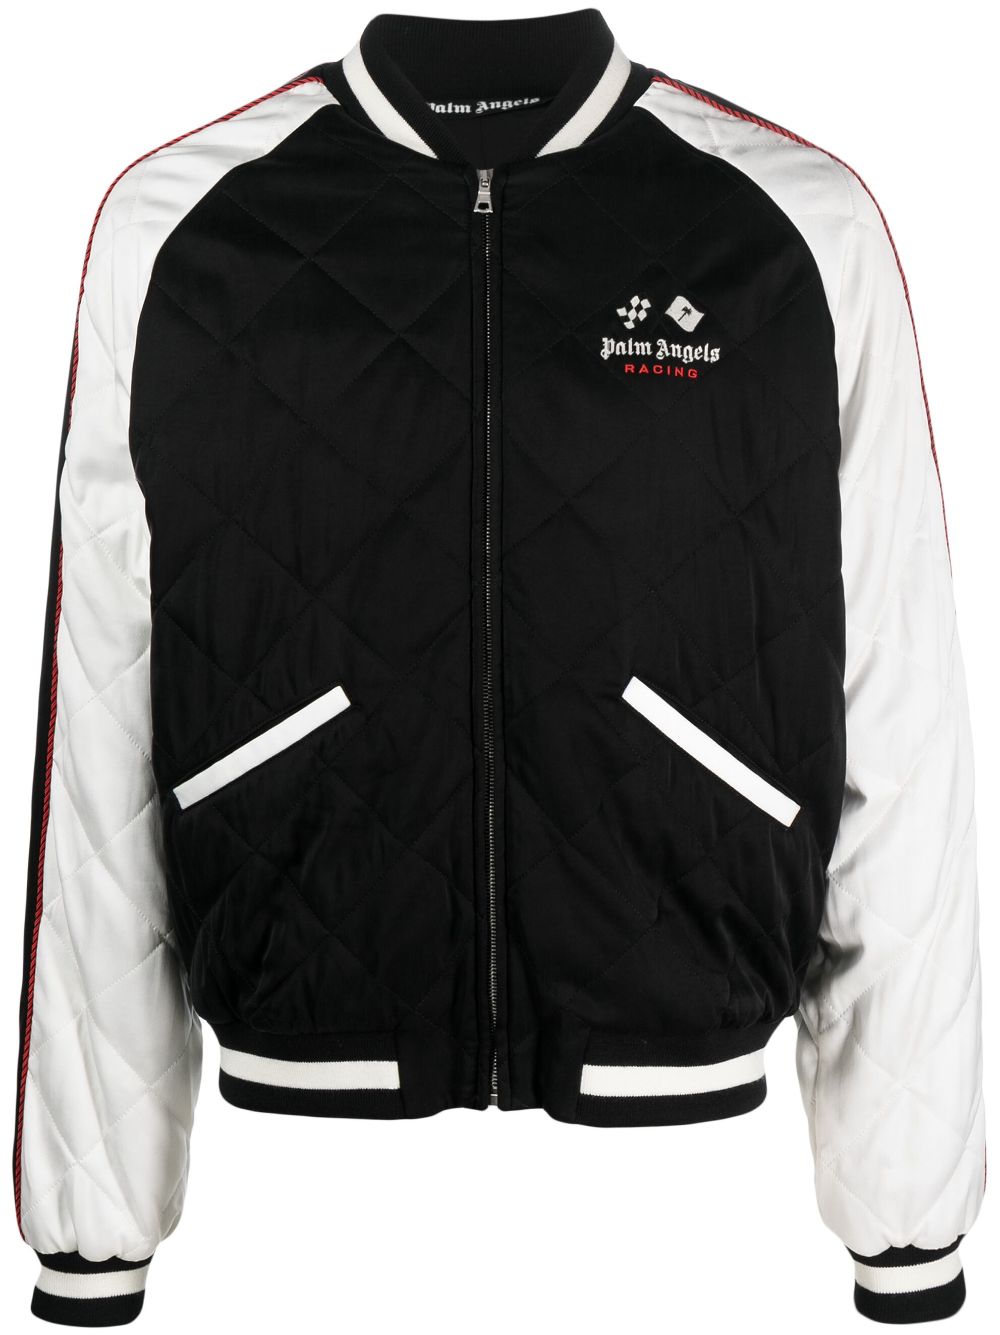 Racing Souvenir bomber jacket